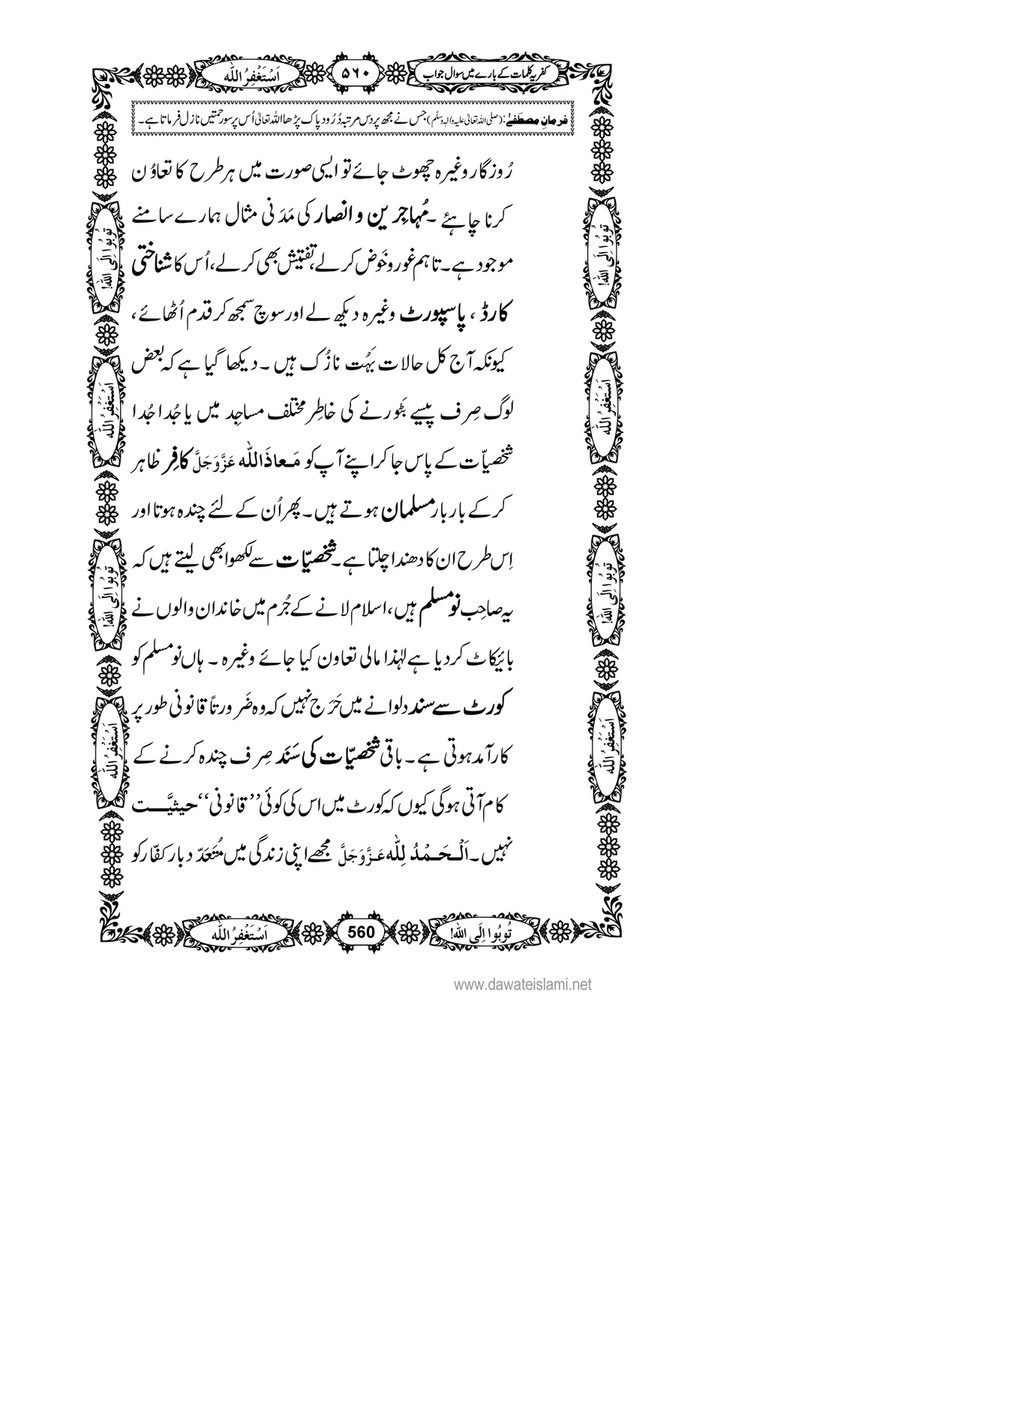 My Publications Kufriya Kalmaat Kay Baray Main Sawal Jawab Page 576 577 Created With Publitas Com